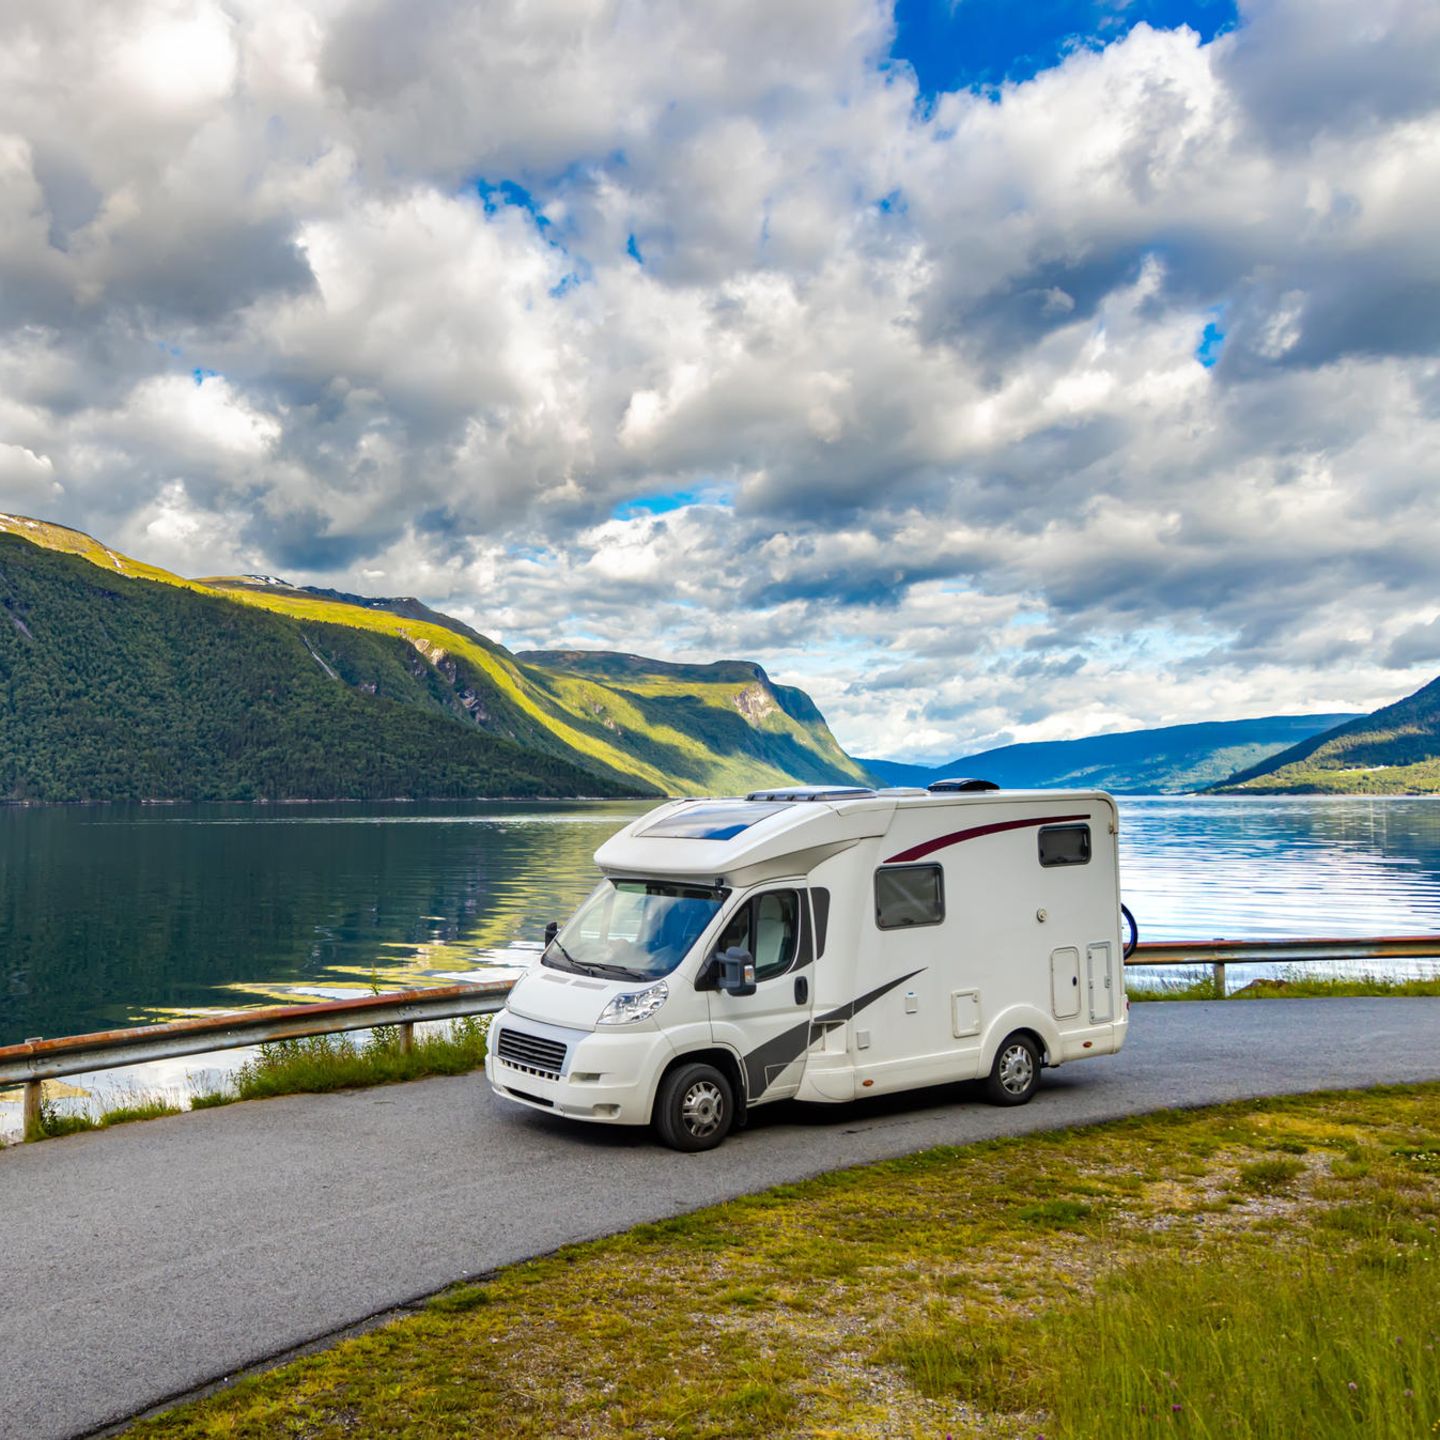 Camping: Wie teuer ist ein Urlaub mit Wohnmobil? - [GEO]